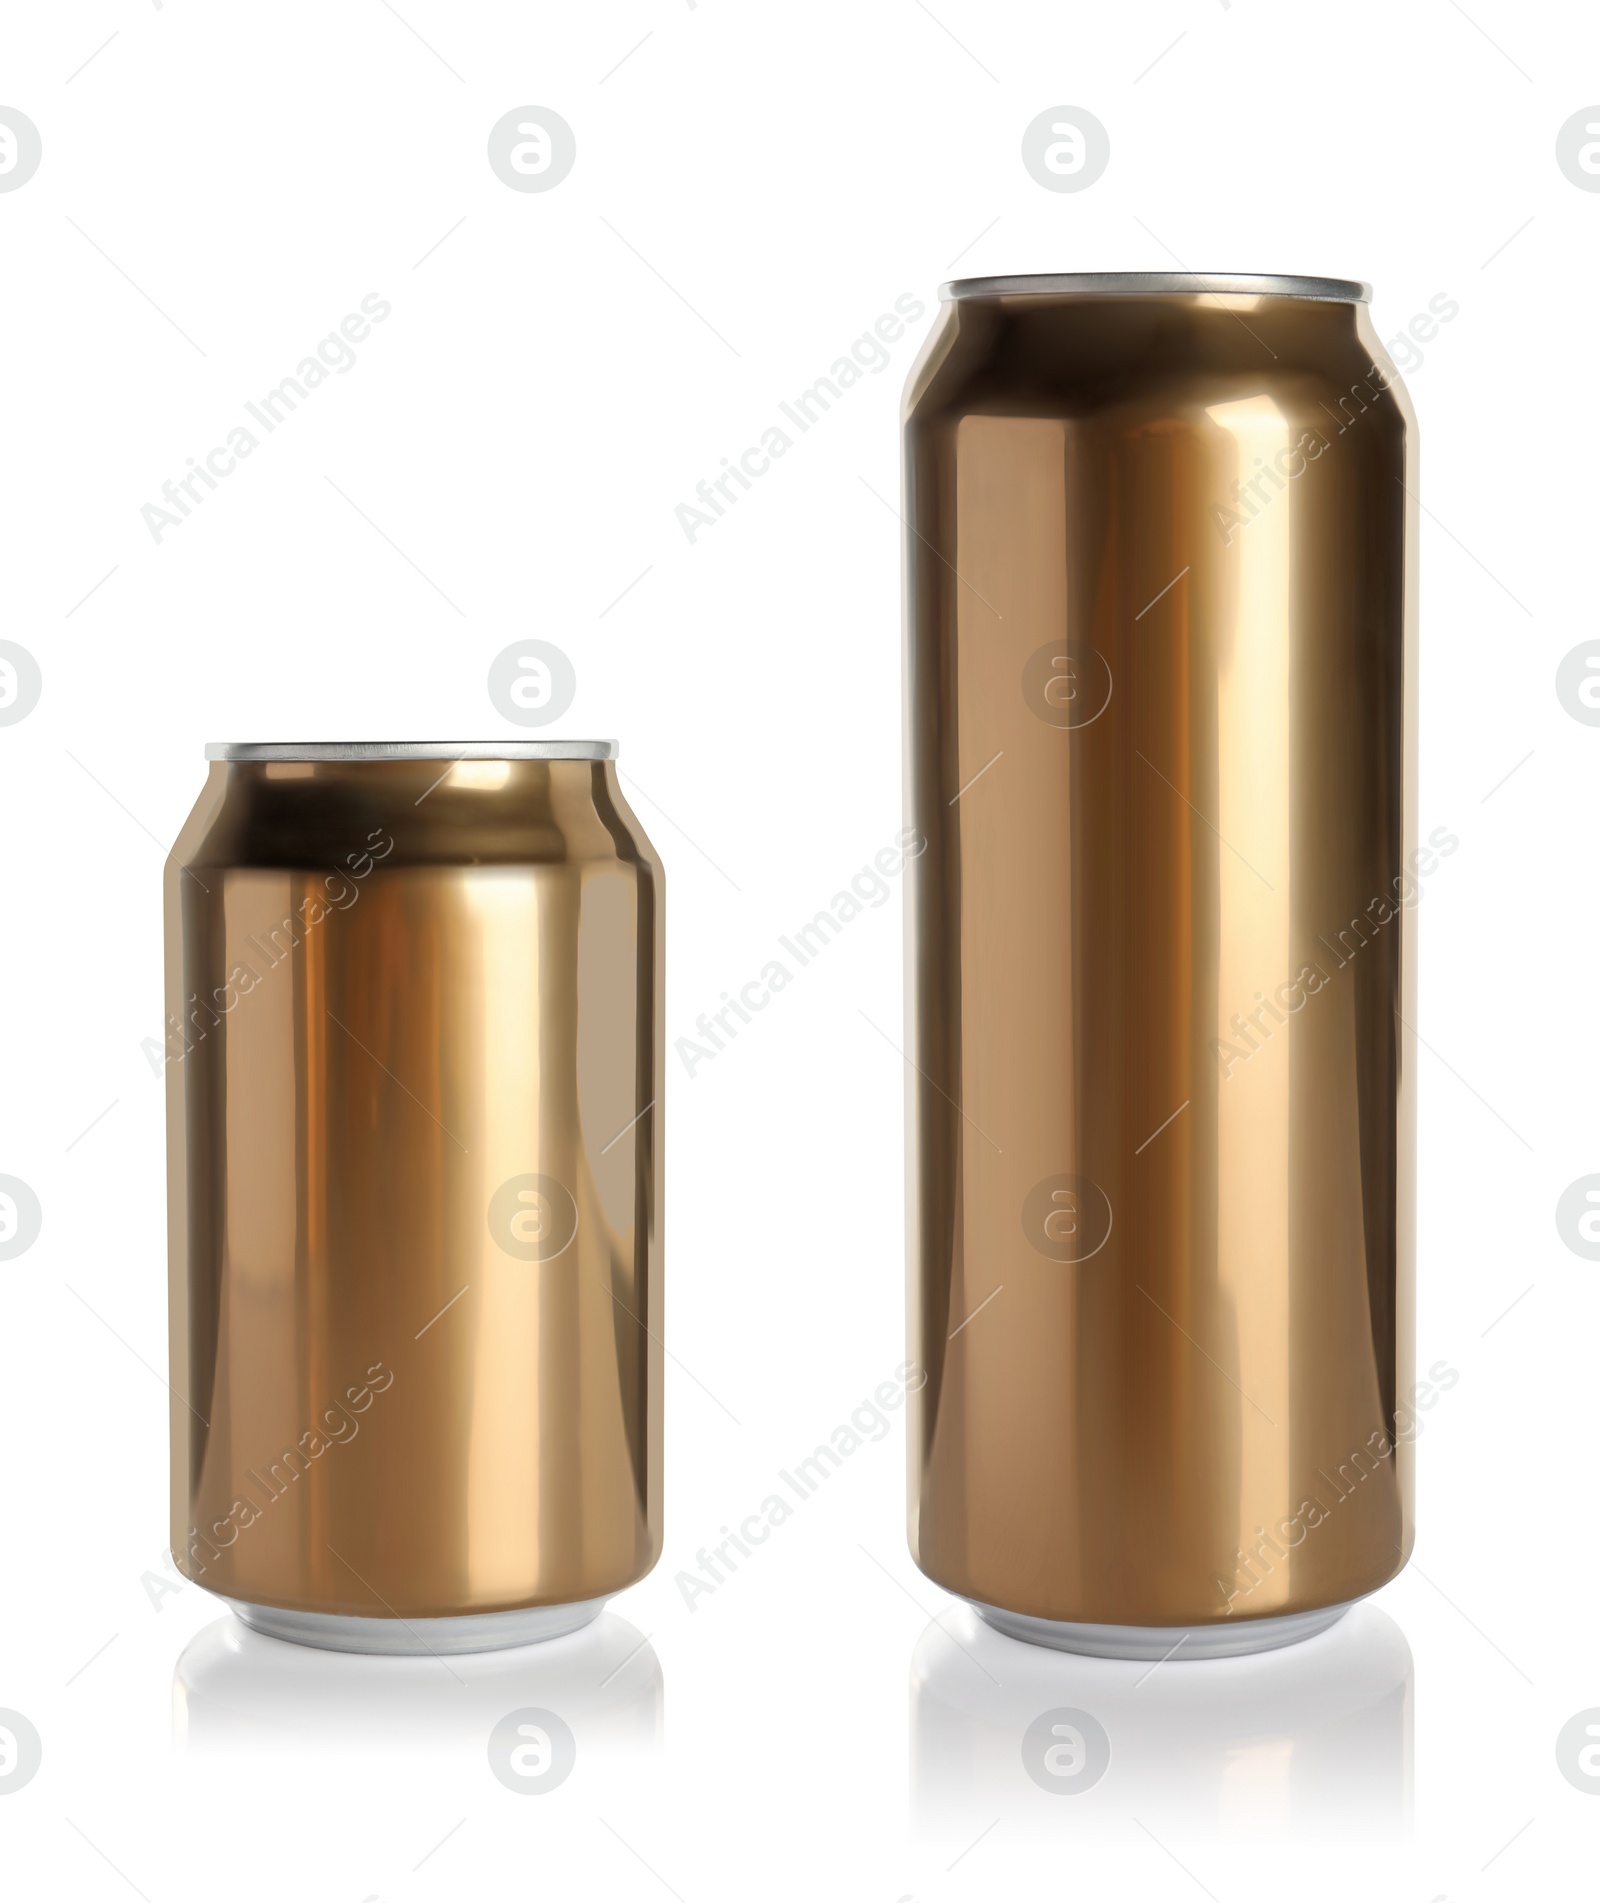 Image of Stylish golden aluminum beverage cans on white background